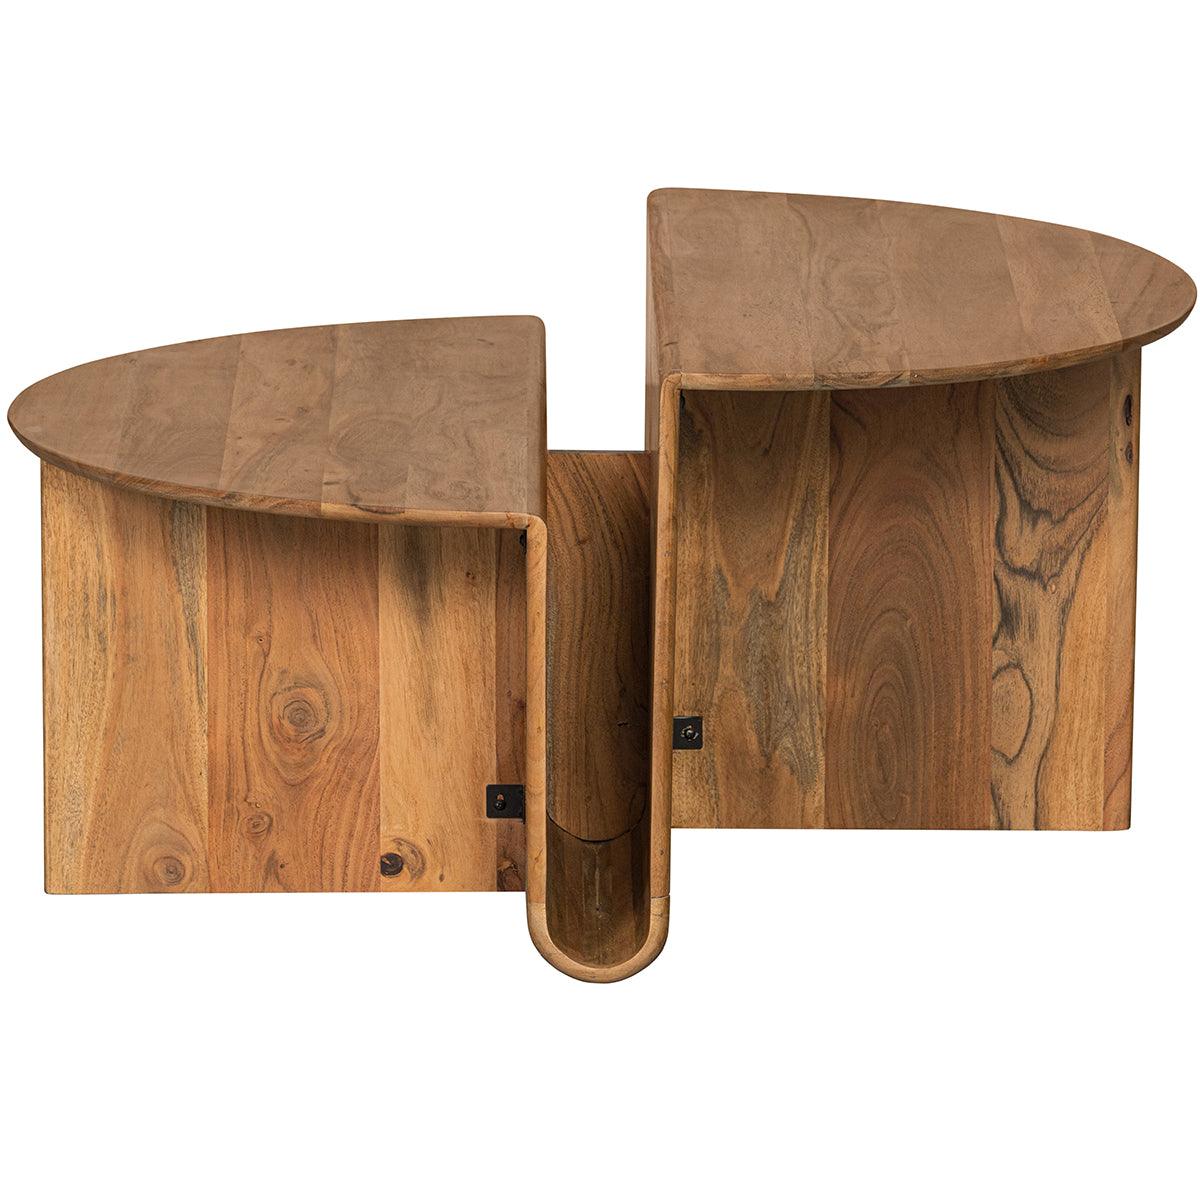 Jaws Natural Acacia Wood Coffee Table - WOO .Design